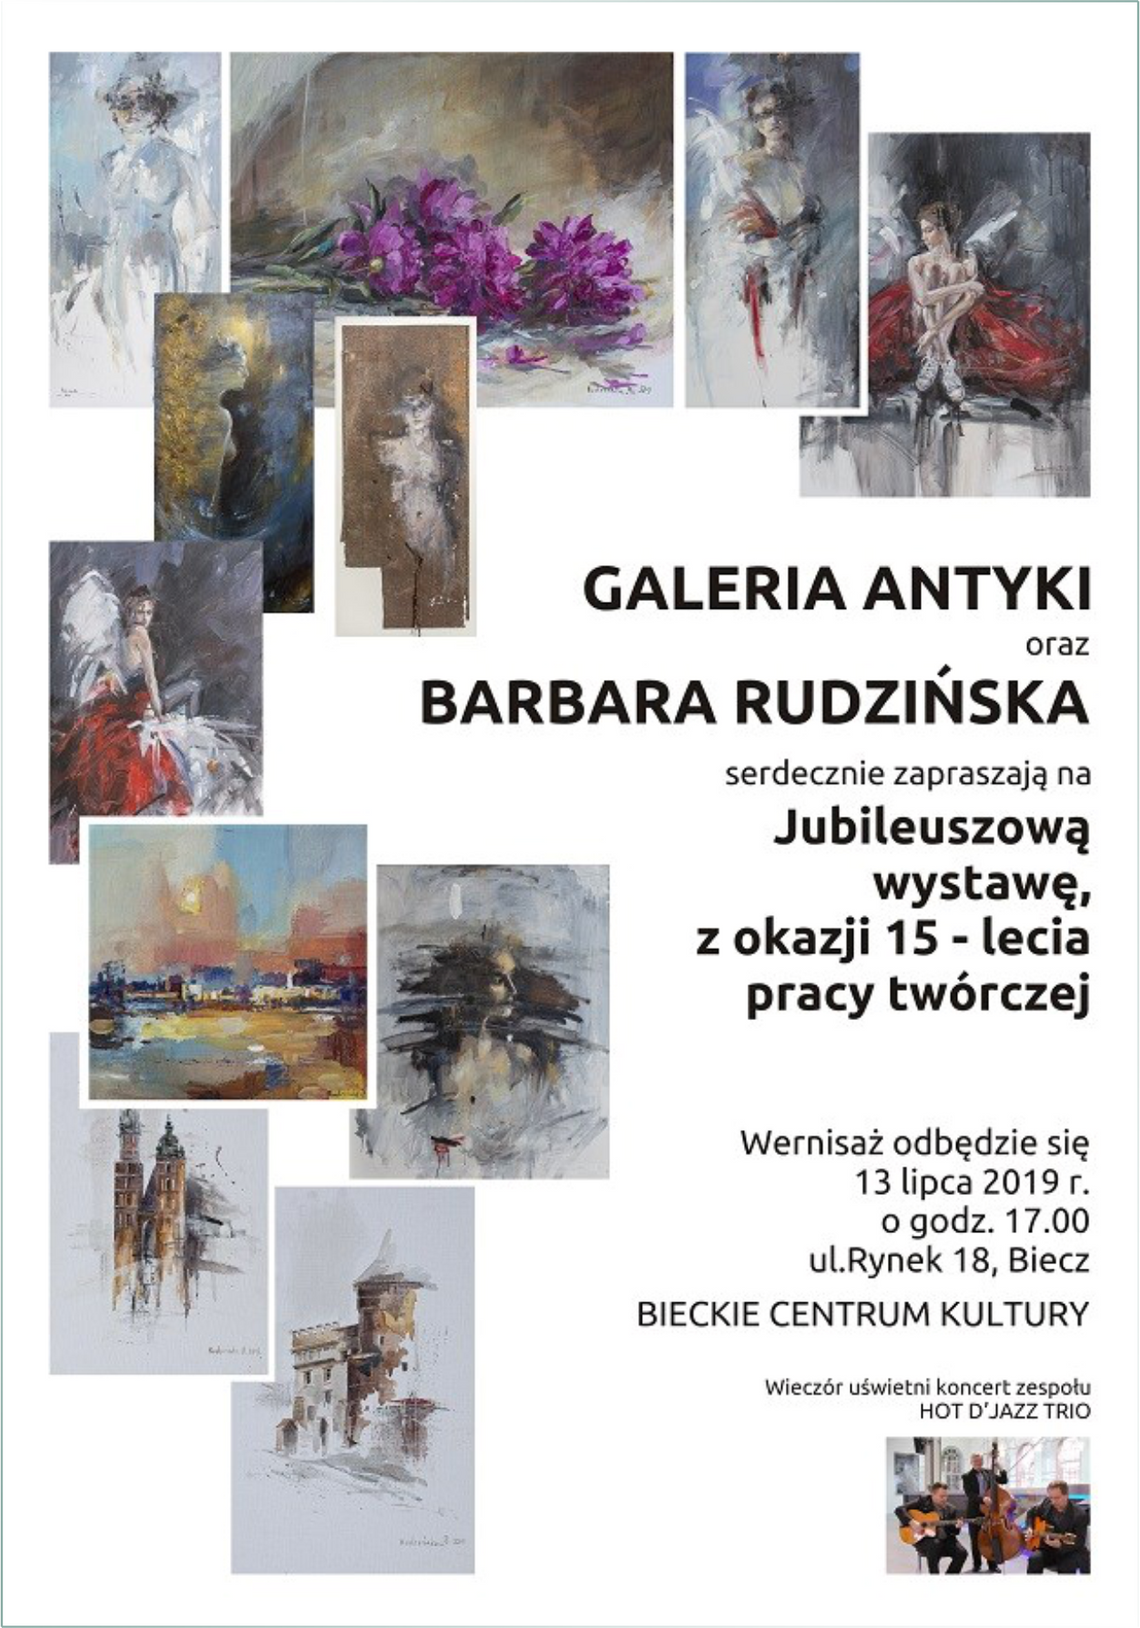 Jubileuszowa wystawa z okazji 15-lecia pracy twórczej Barbary Rudzińskiej